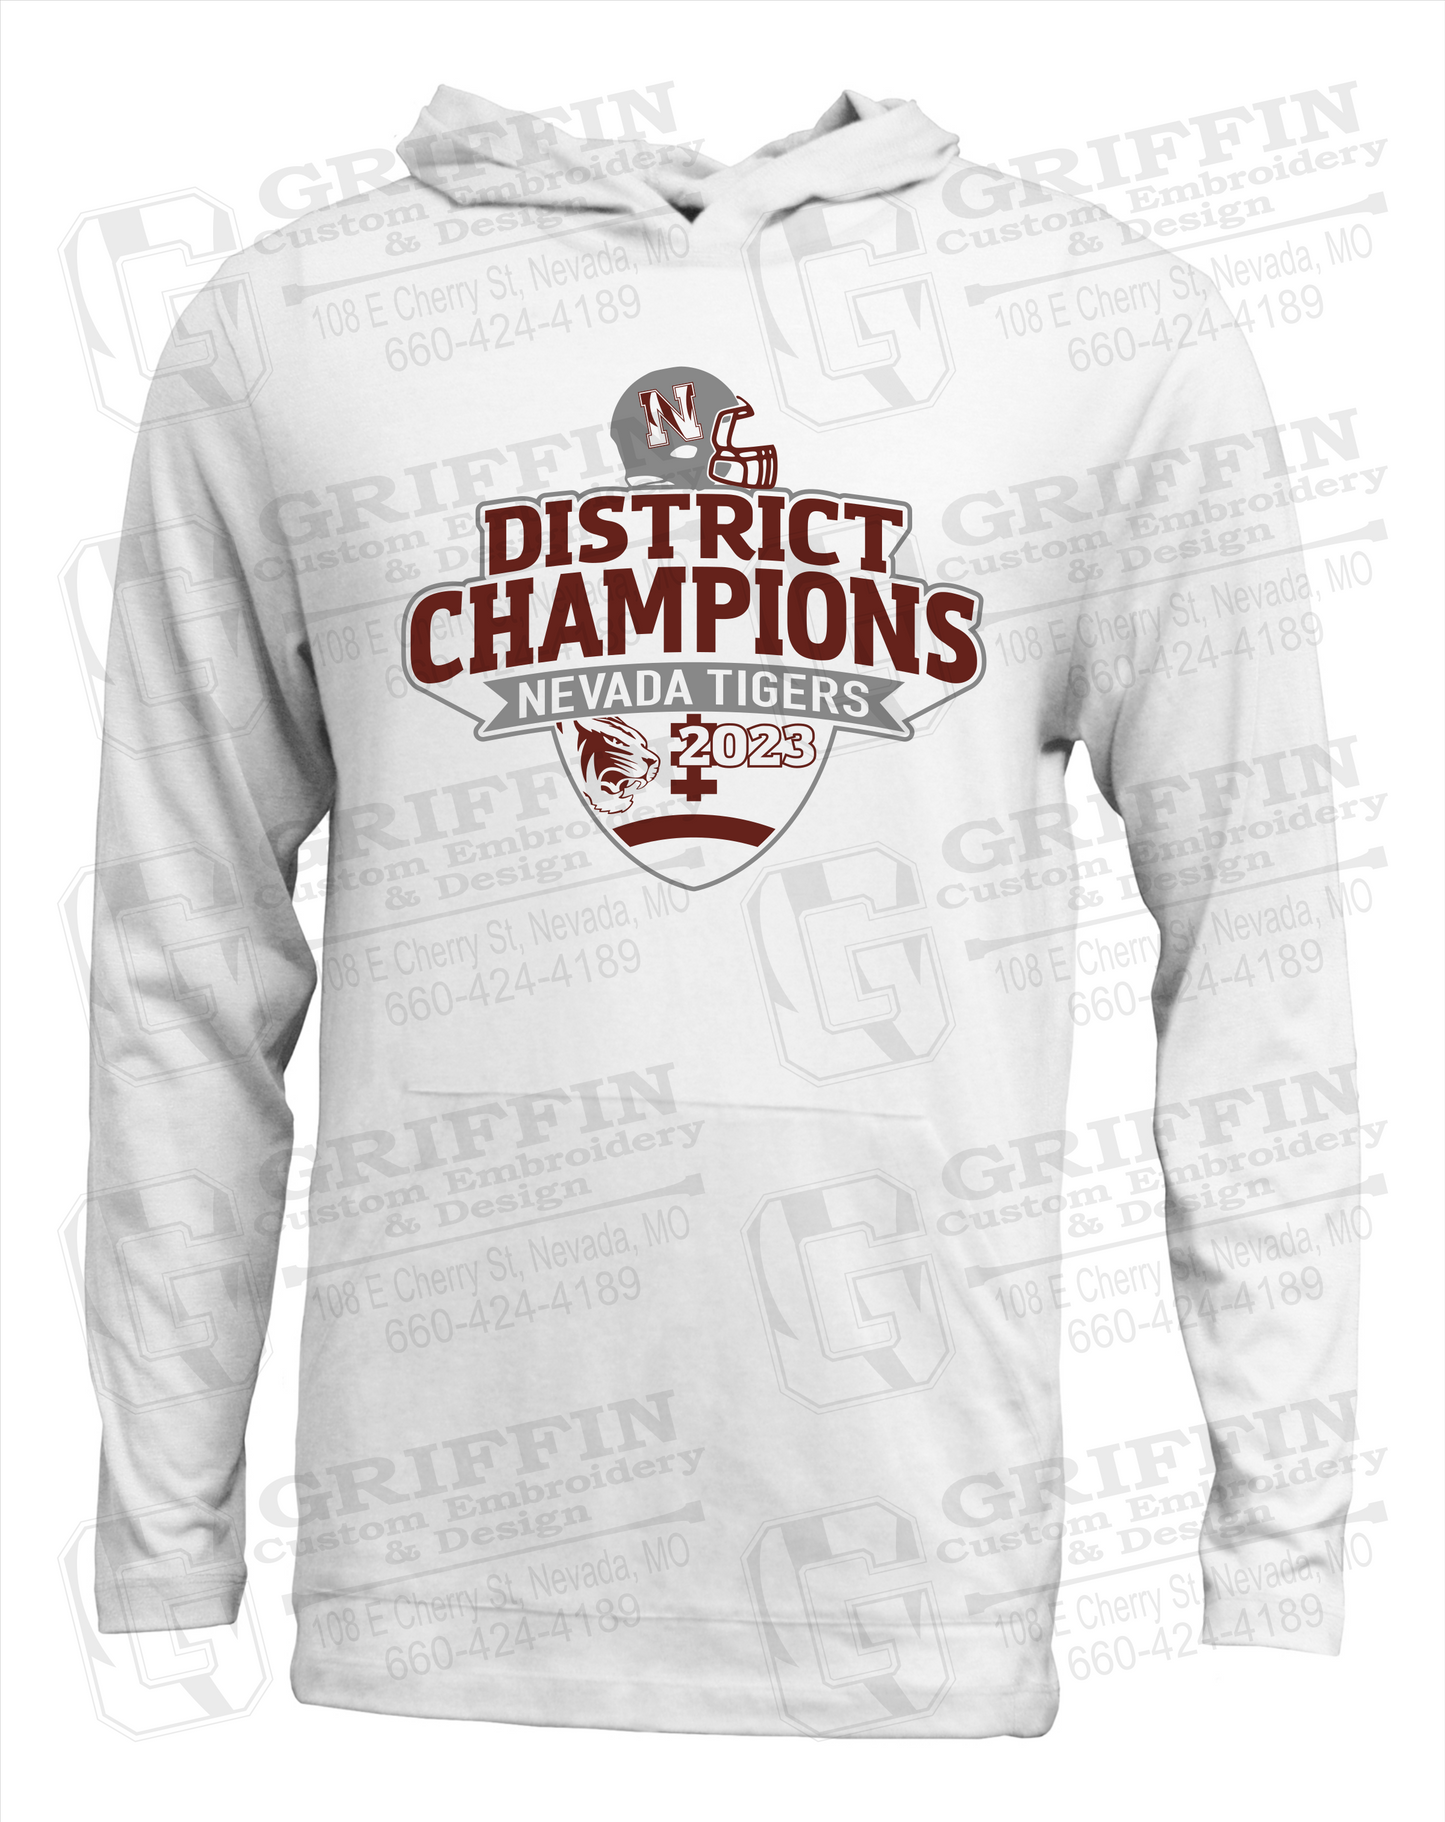 Nevada Tigers 24-L T-Shirt Hoodie - Football 2023 District Champions